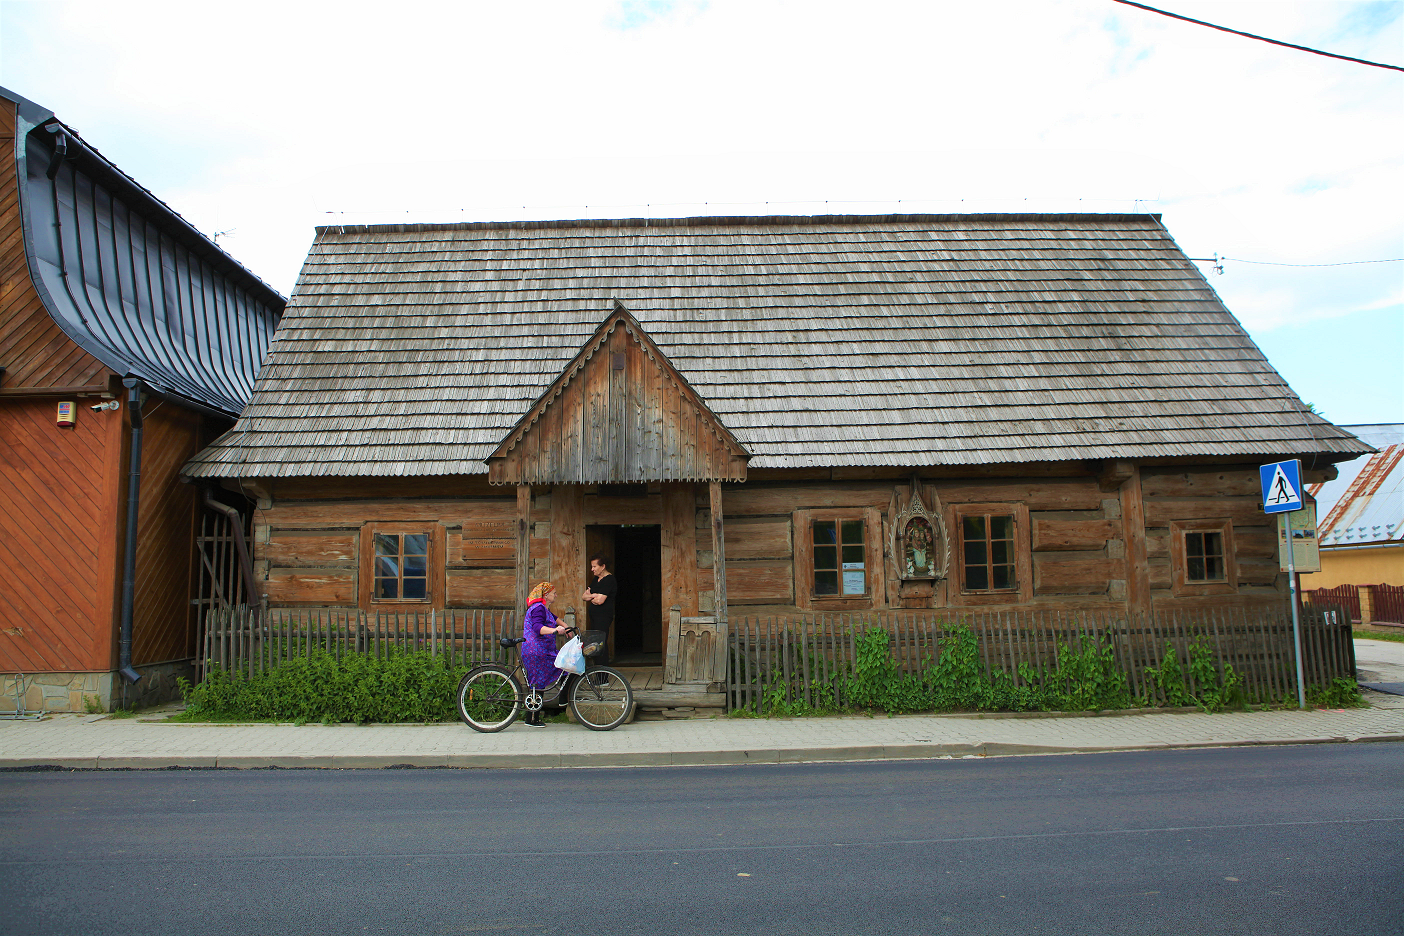 Drewniany dom od frontu, dach pokryty gontem. Przed domem dwie osoby jedna stoi, druga jedzie na rowerze po chodniku. 